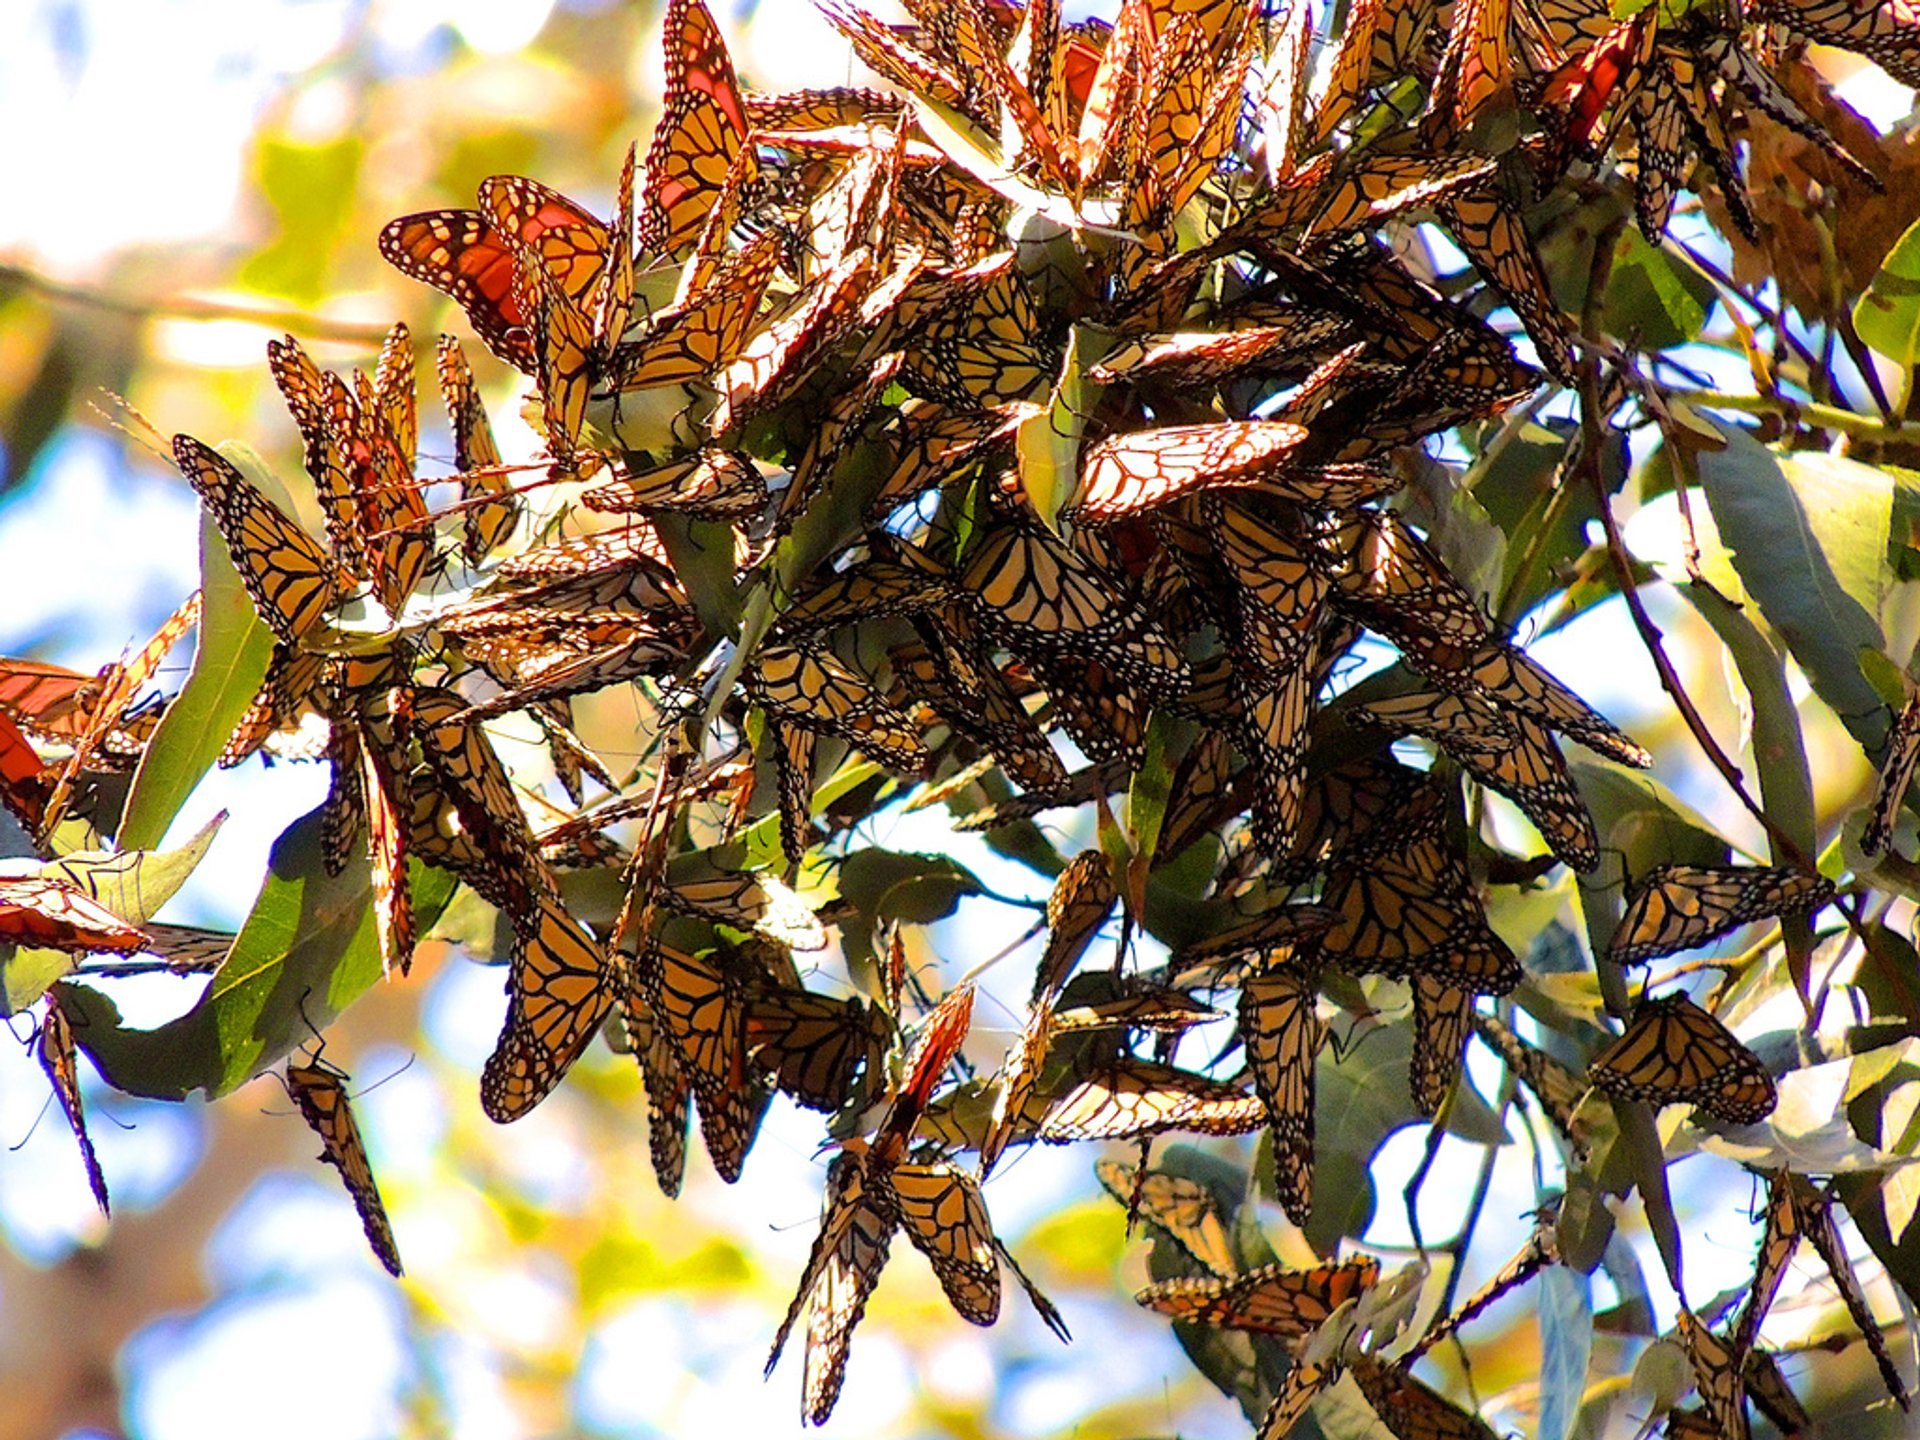 Goleta Monarch Butterfly Grove 